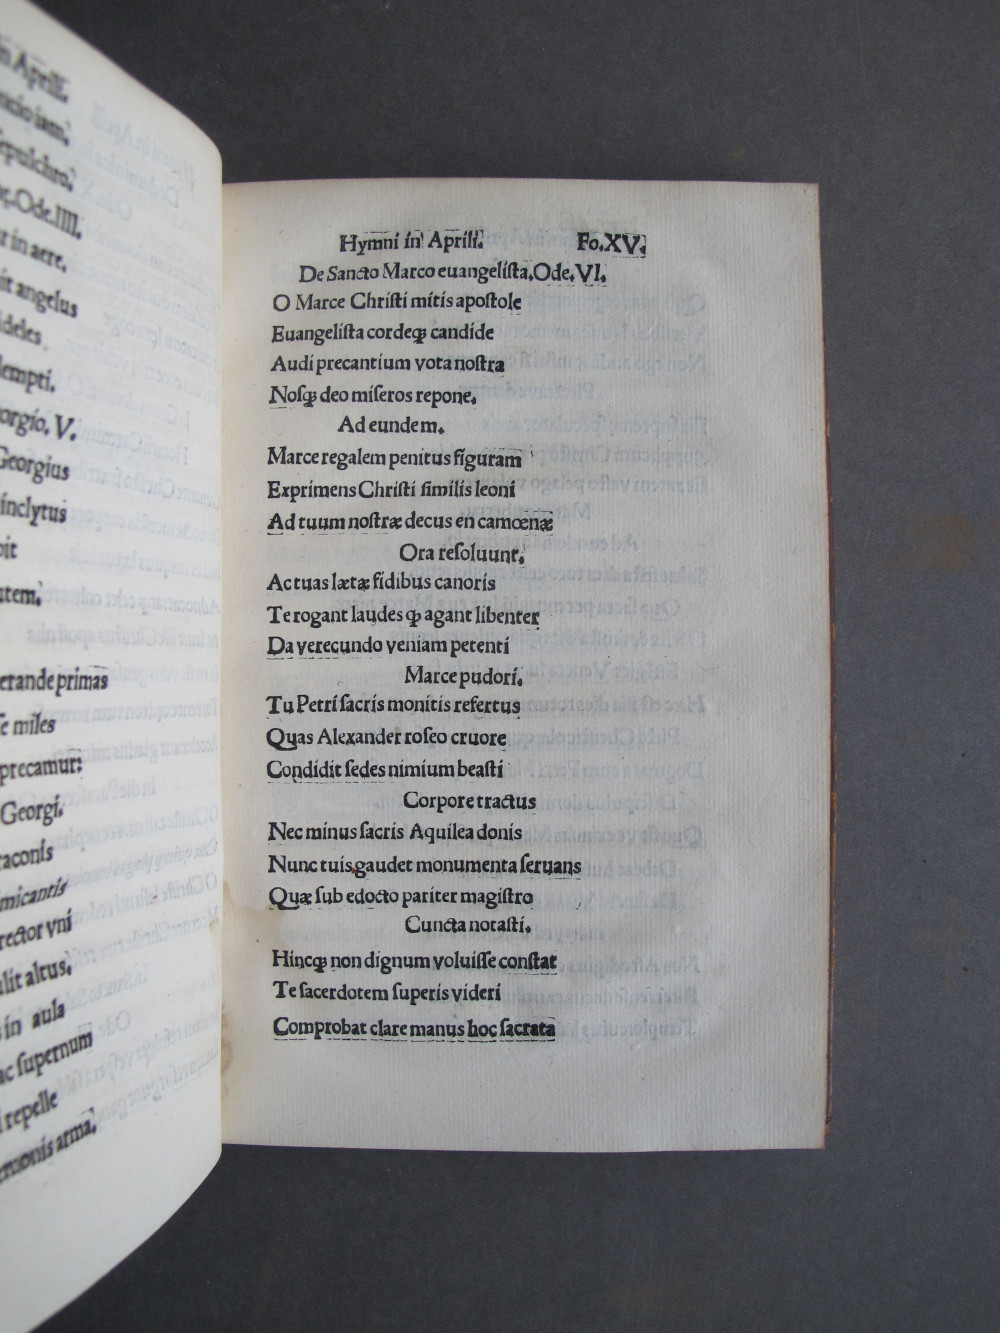 Folio 15 recto